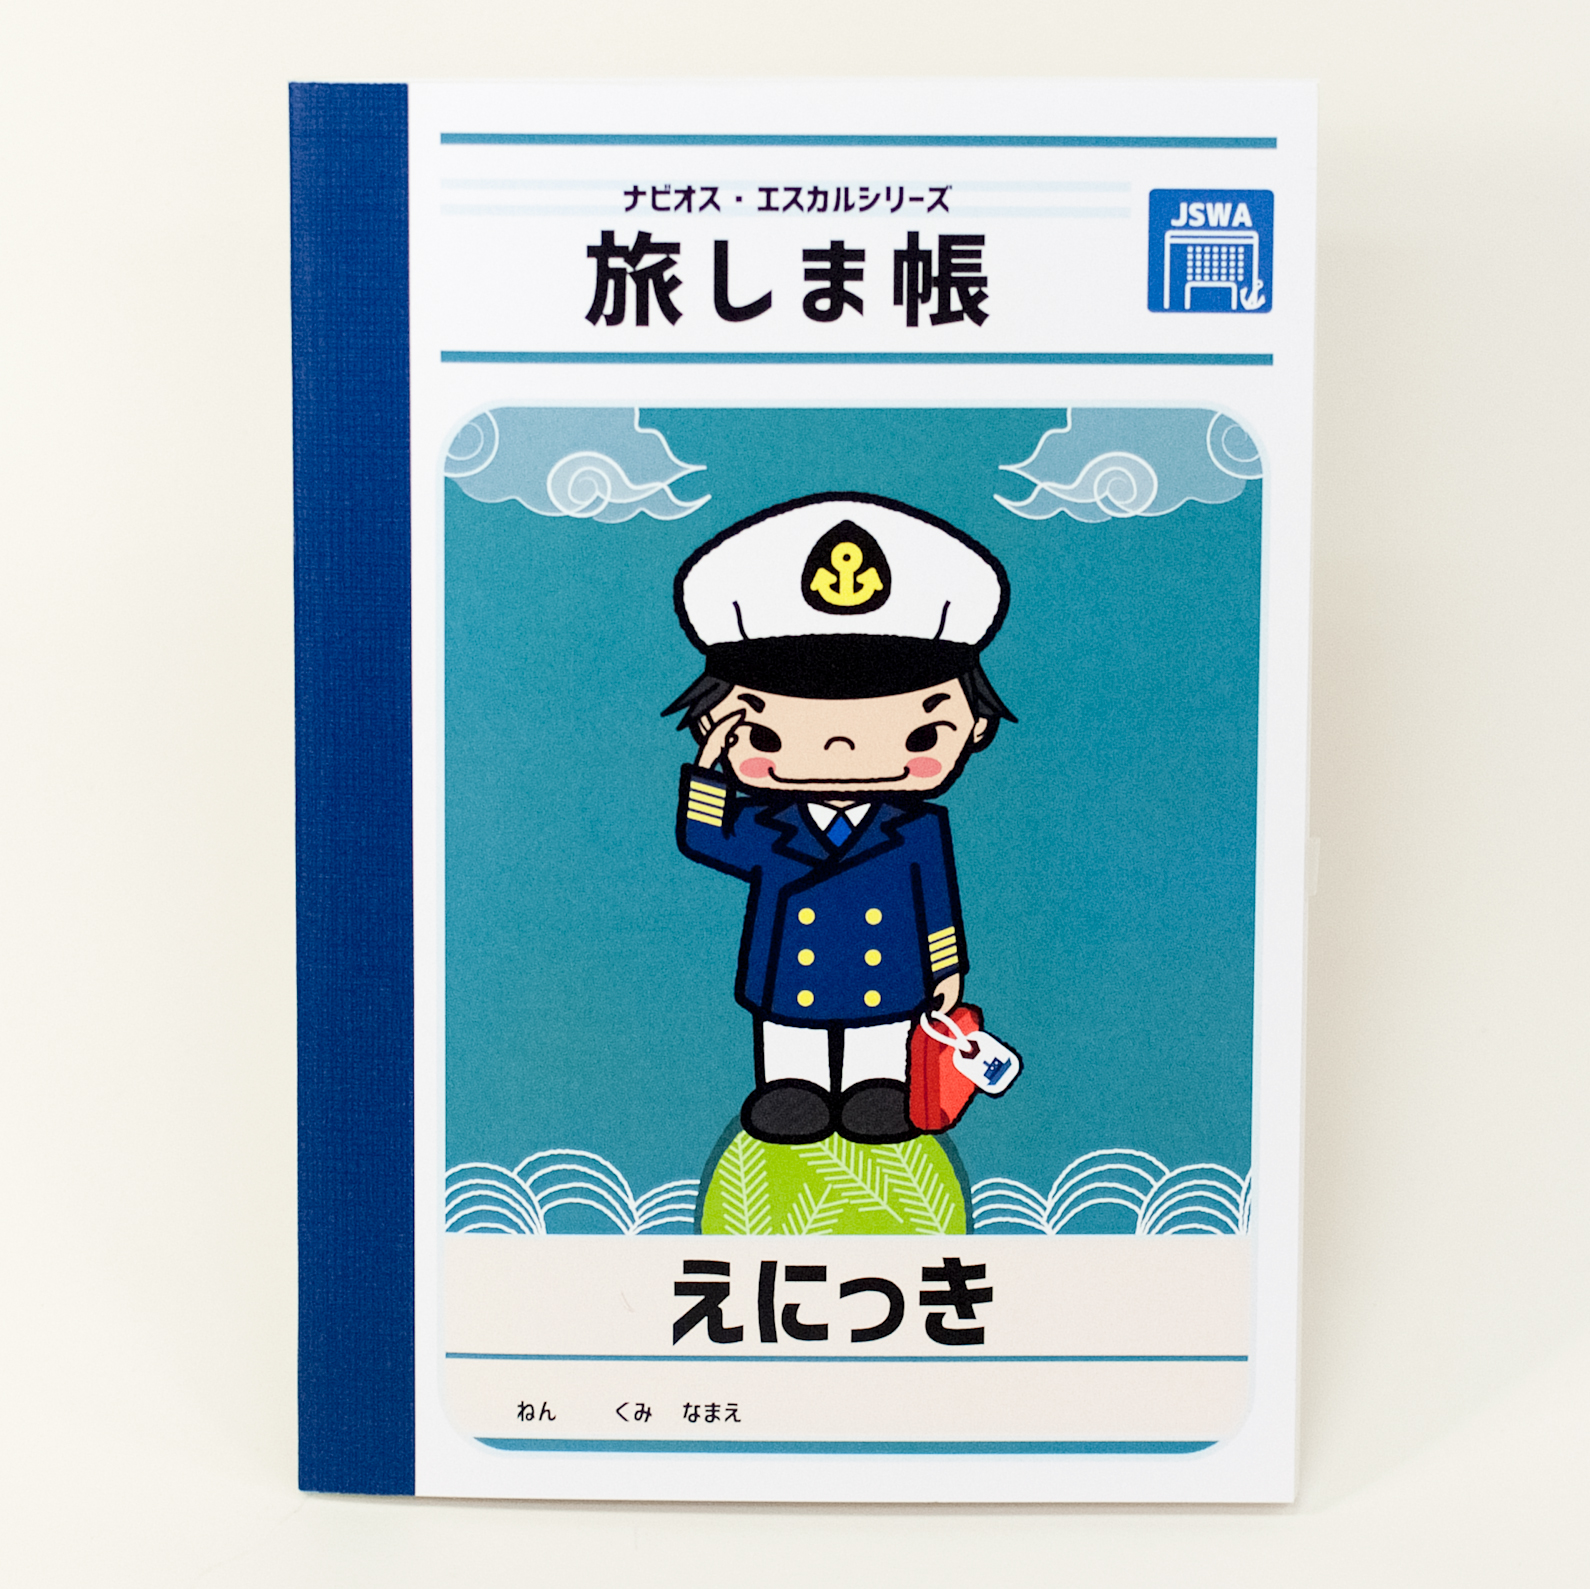 「一般財団法人　日本船員厚生協会 様」製作のオリジナルノート